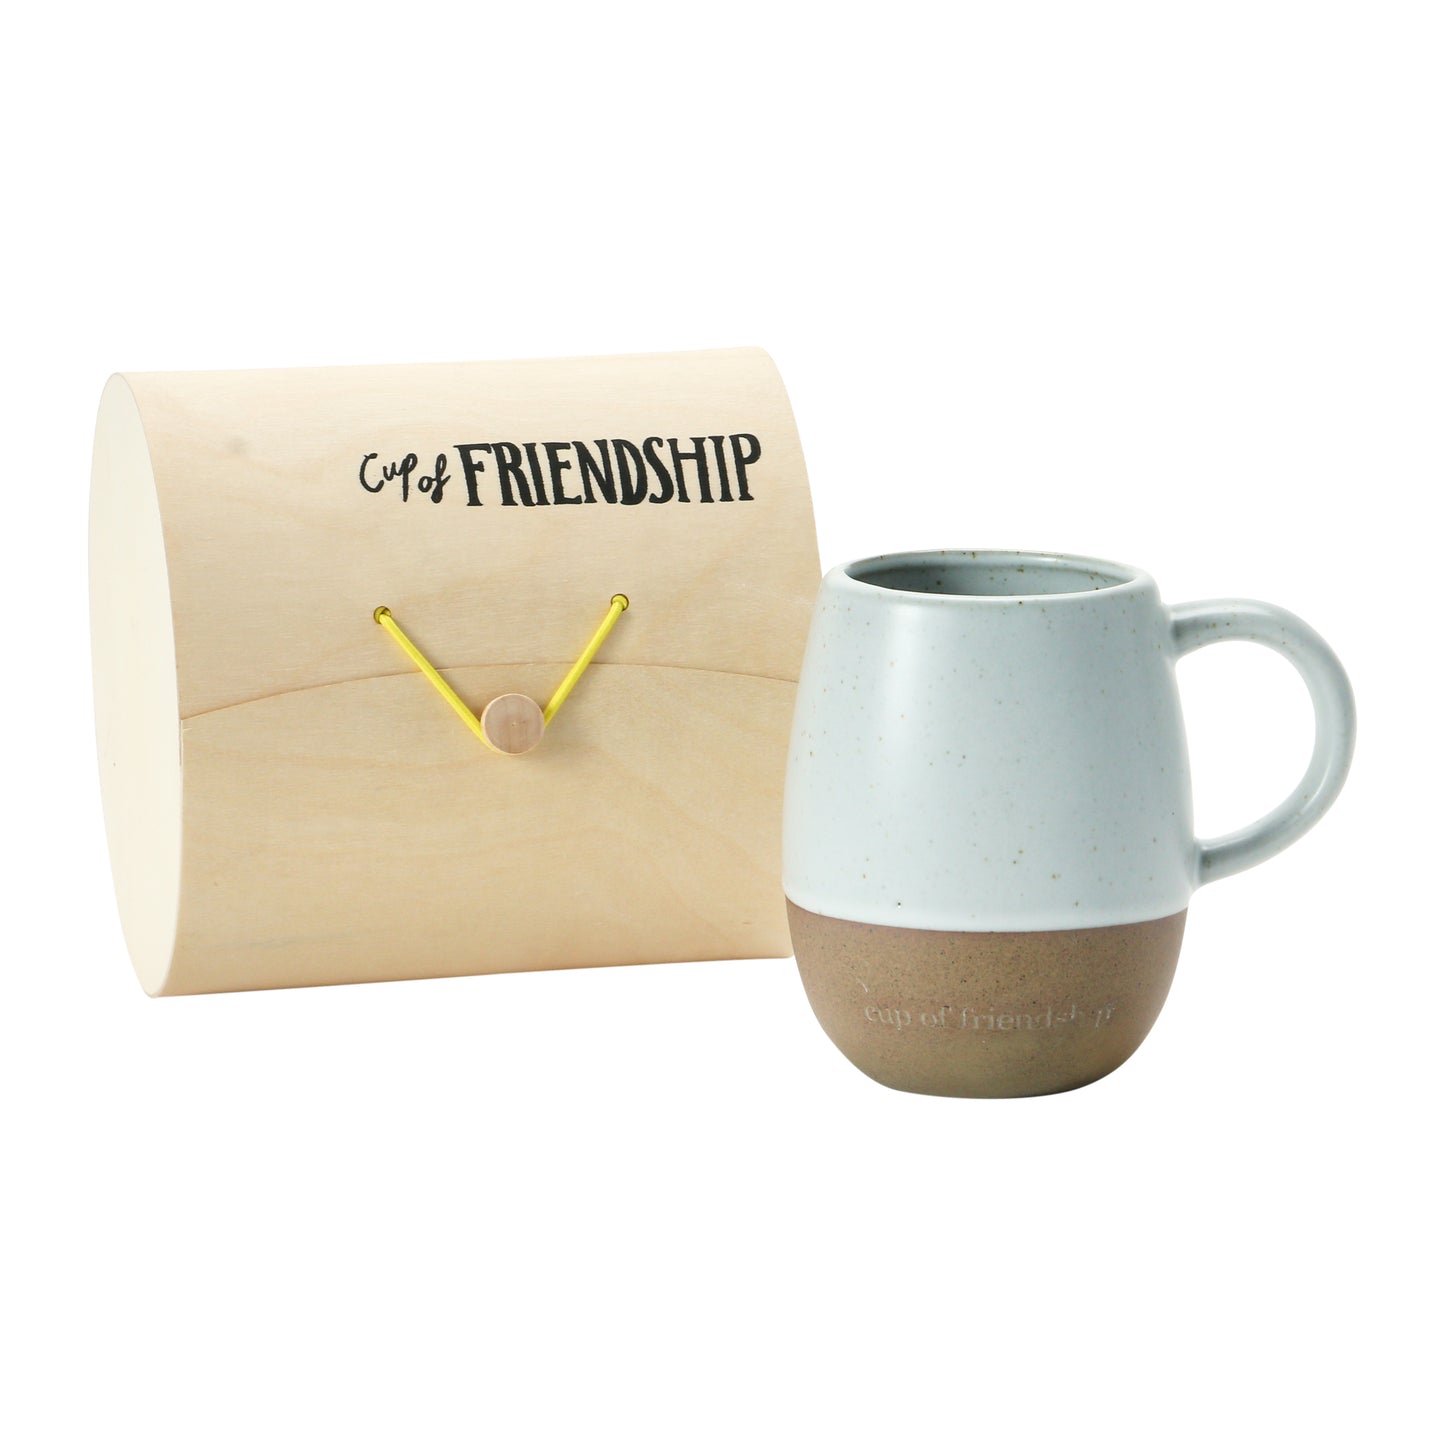 Mug with Gift Box and Saying